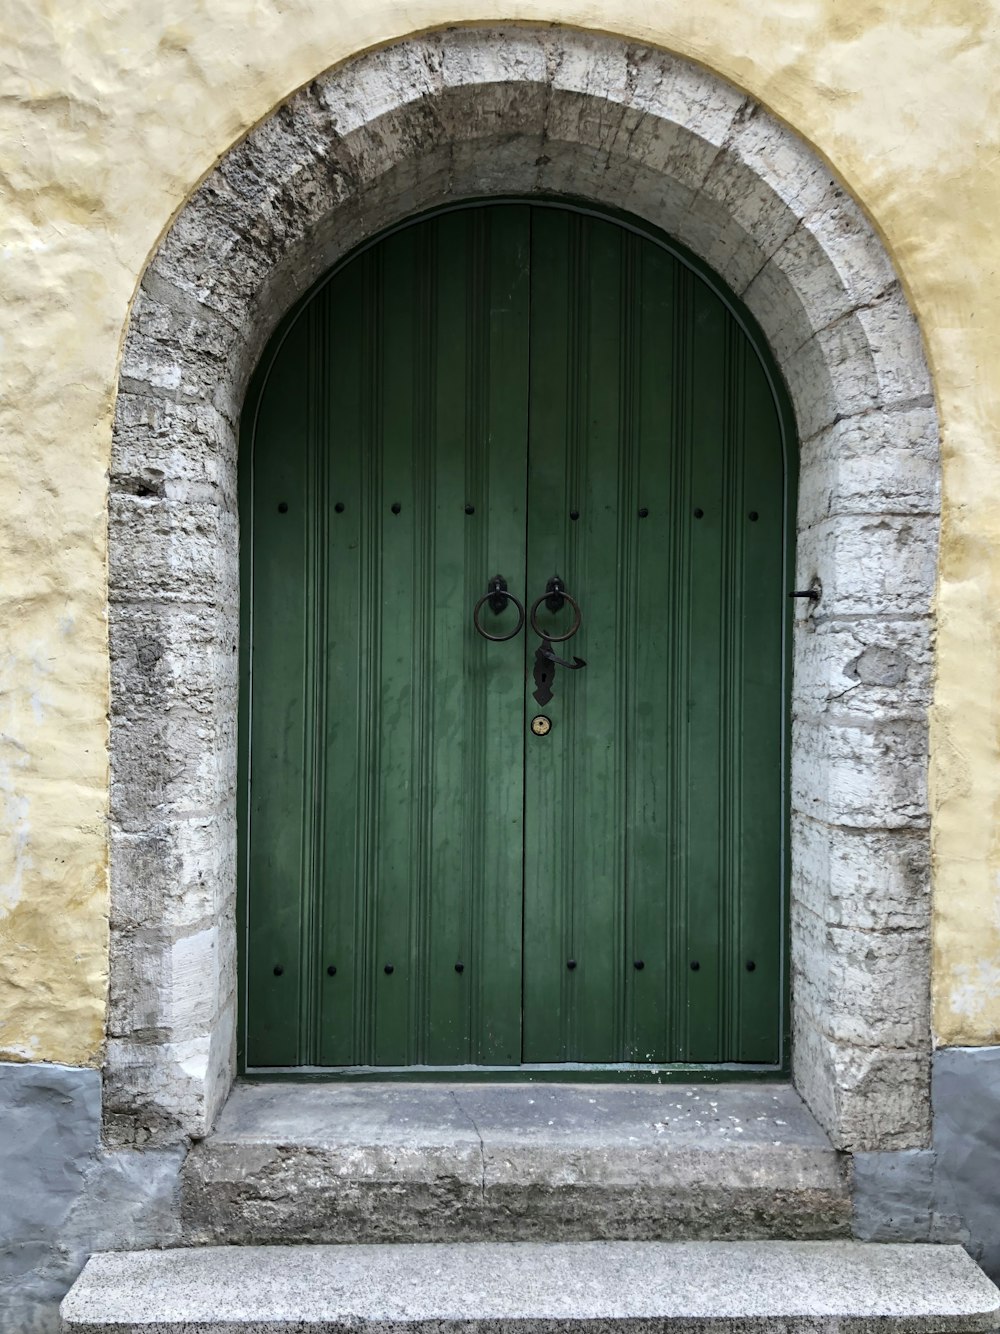 검은색 노커가 있는 녹색 문